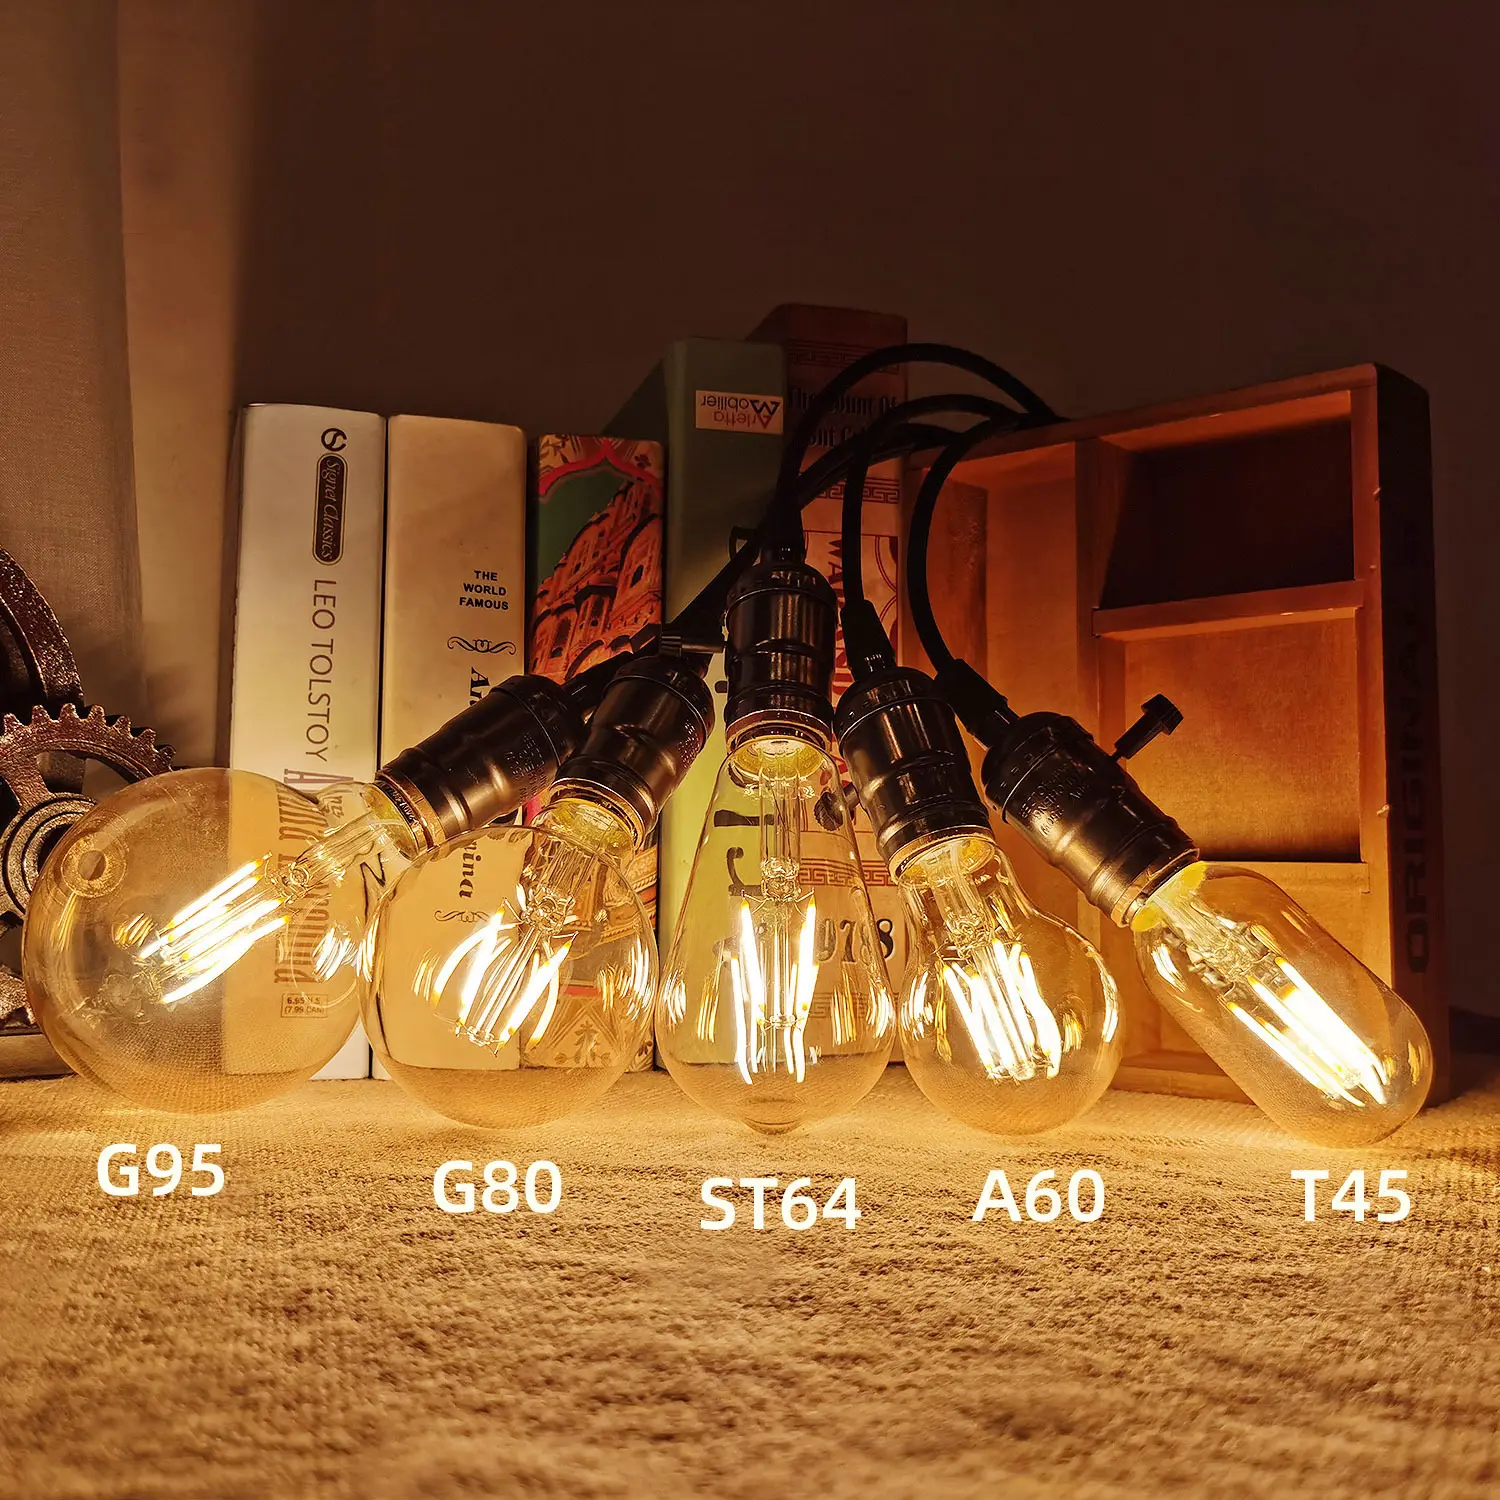 مصباح LED عتيق على شكل كرة الأرض معتمد من CE مصباح G80 E27 بقوة 2 واط و4 واط و6 واط و82 واط و10 واط مصباح كهربائي عتيق من Edison بتقنية DIM وampere